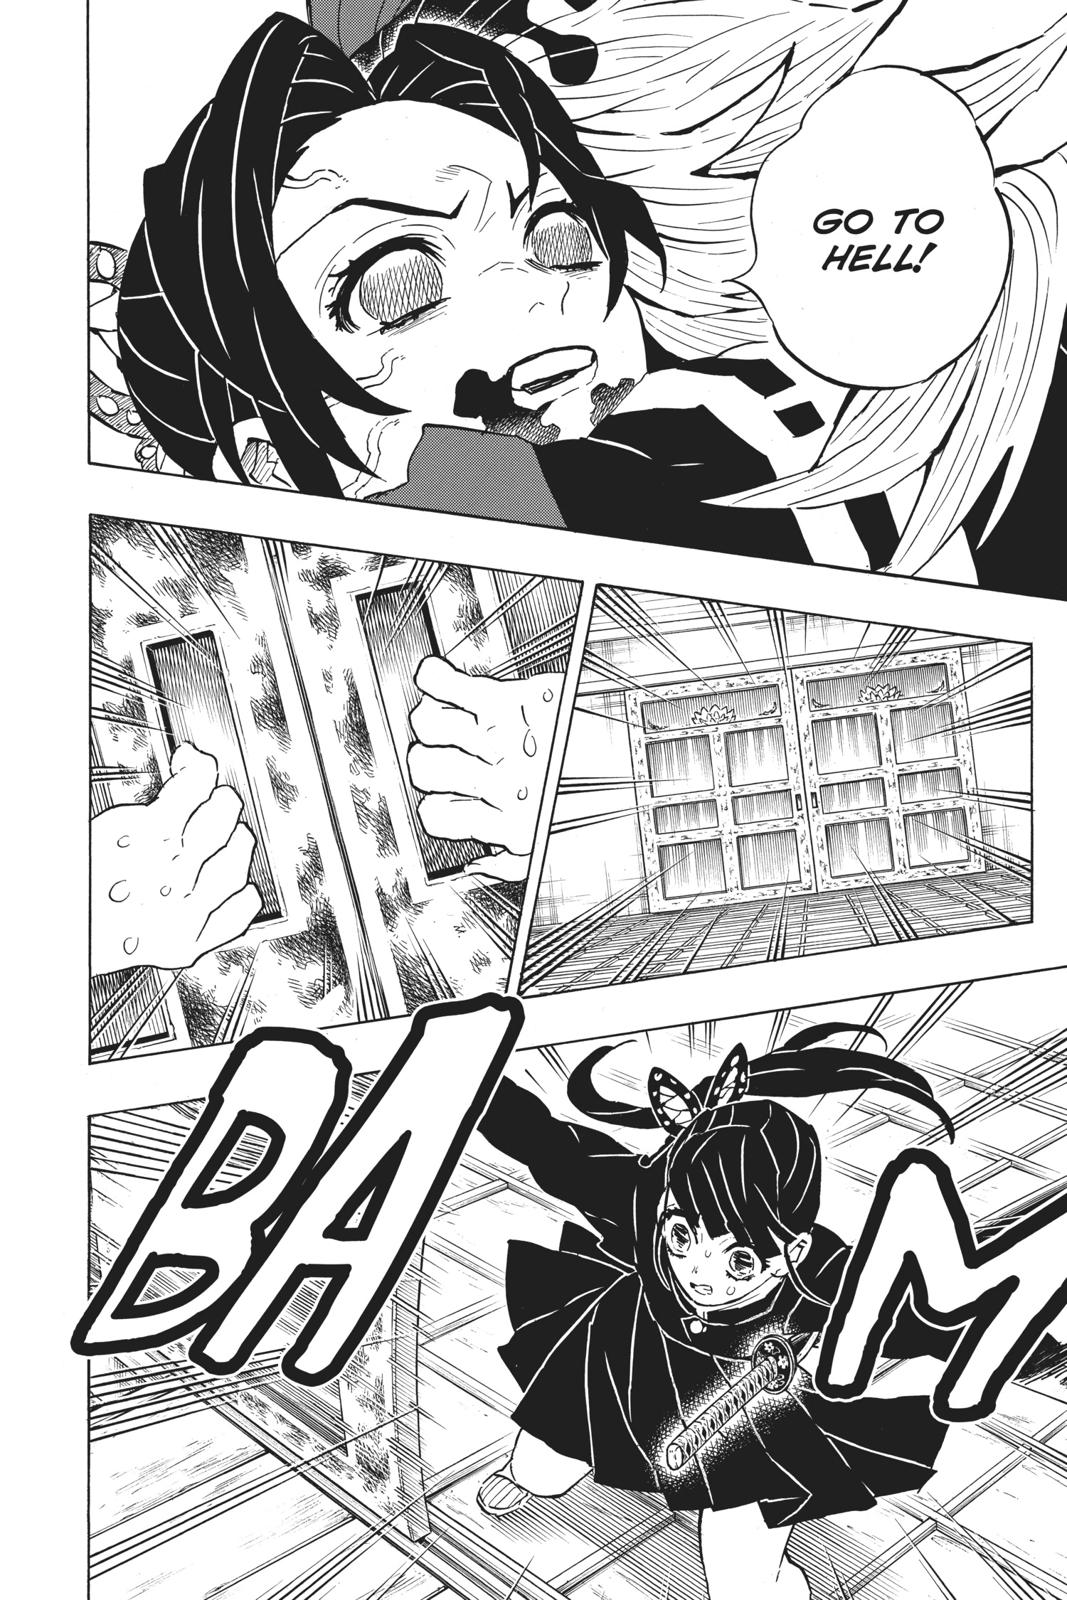 Demon Slayer Manga Manga Chapter - 143 - image 13